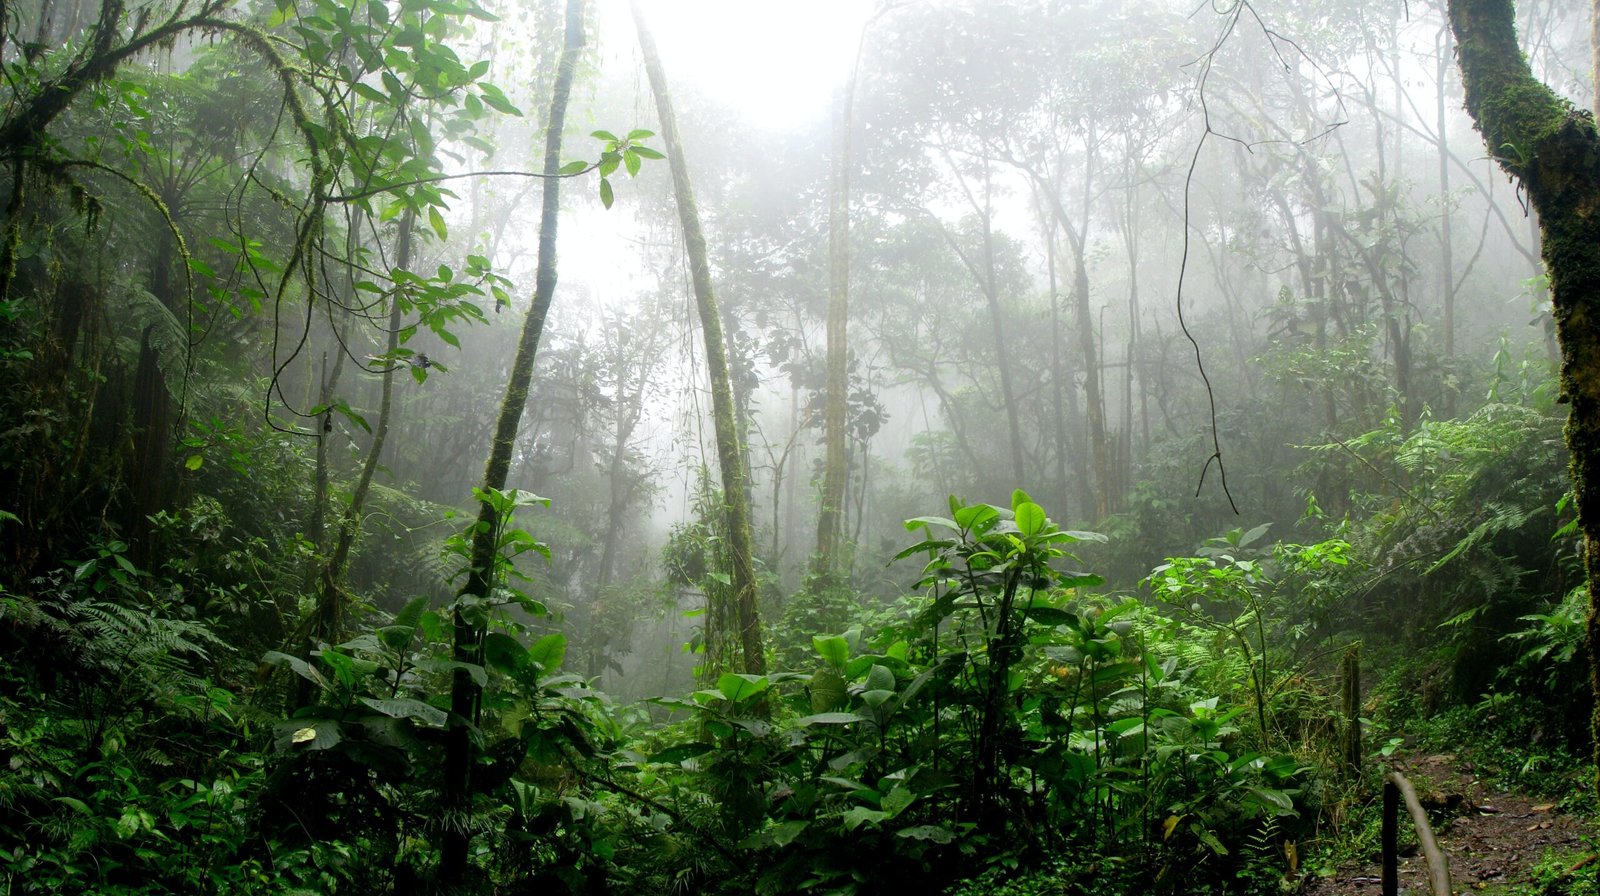 A misty jungle